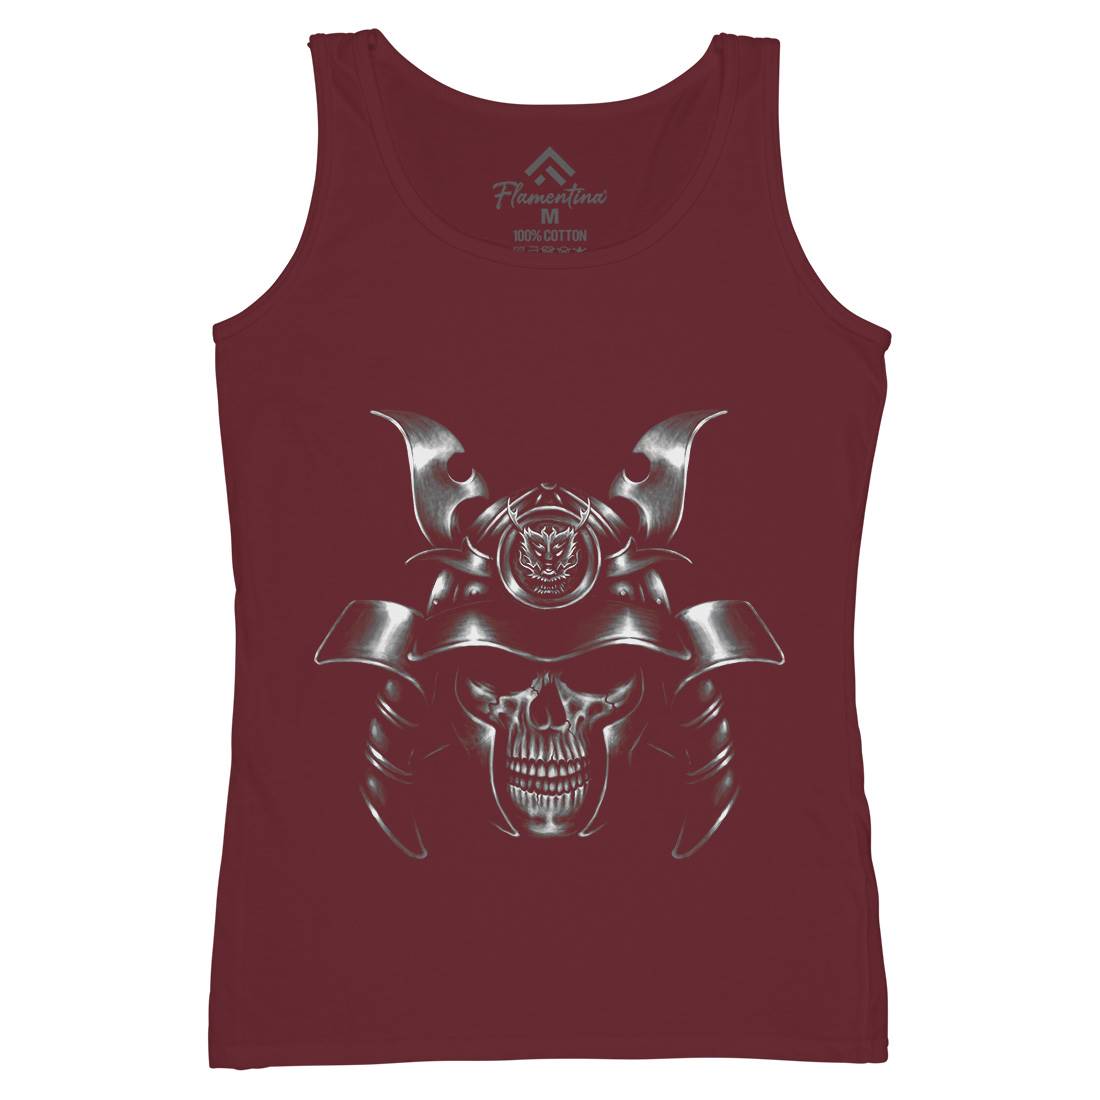 Spirit Of Ronin Womens Organic Tank Top Vest Warriors A469